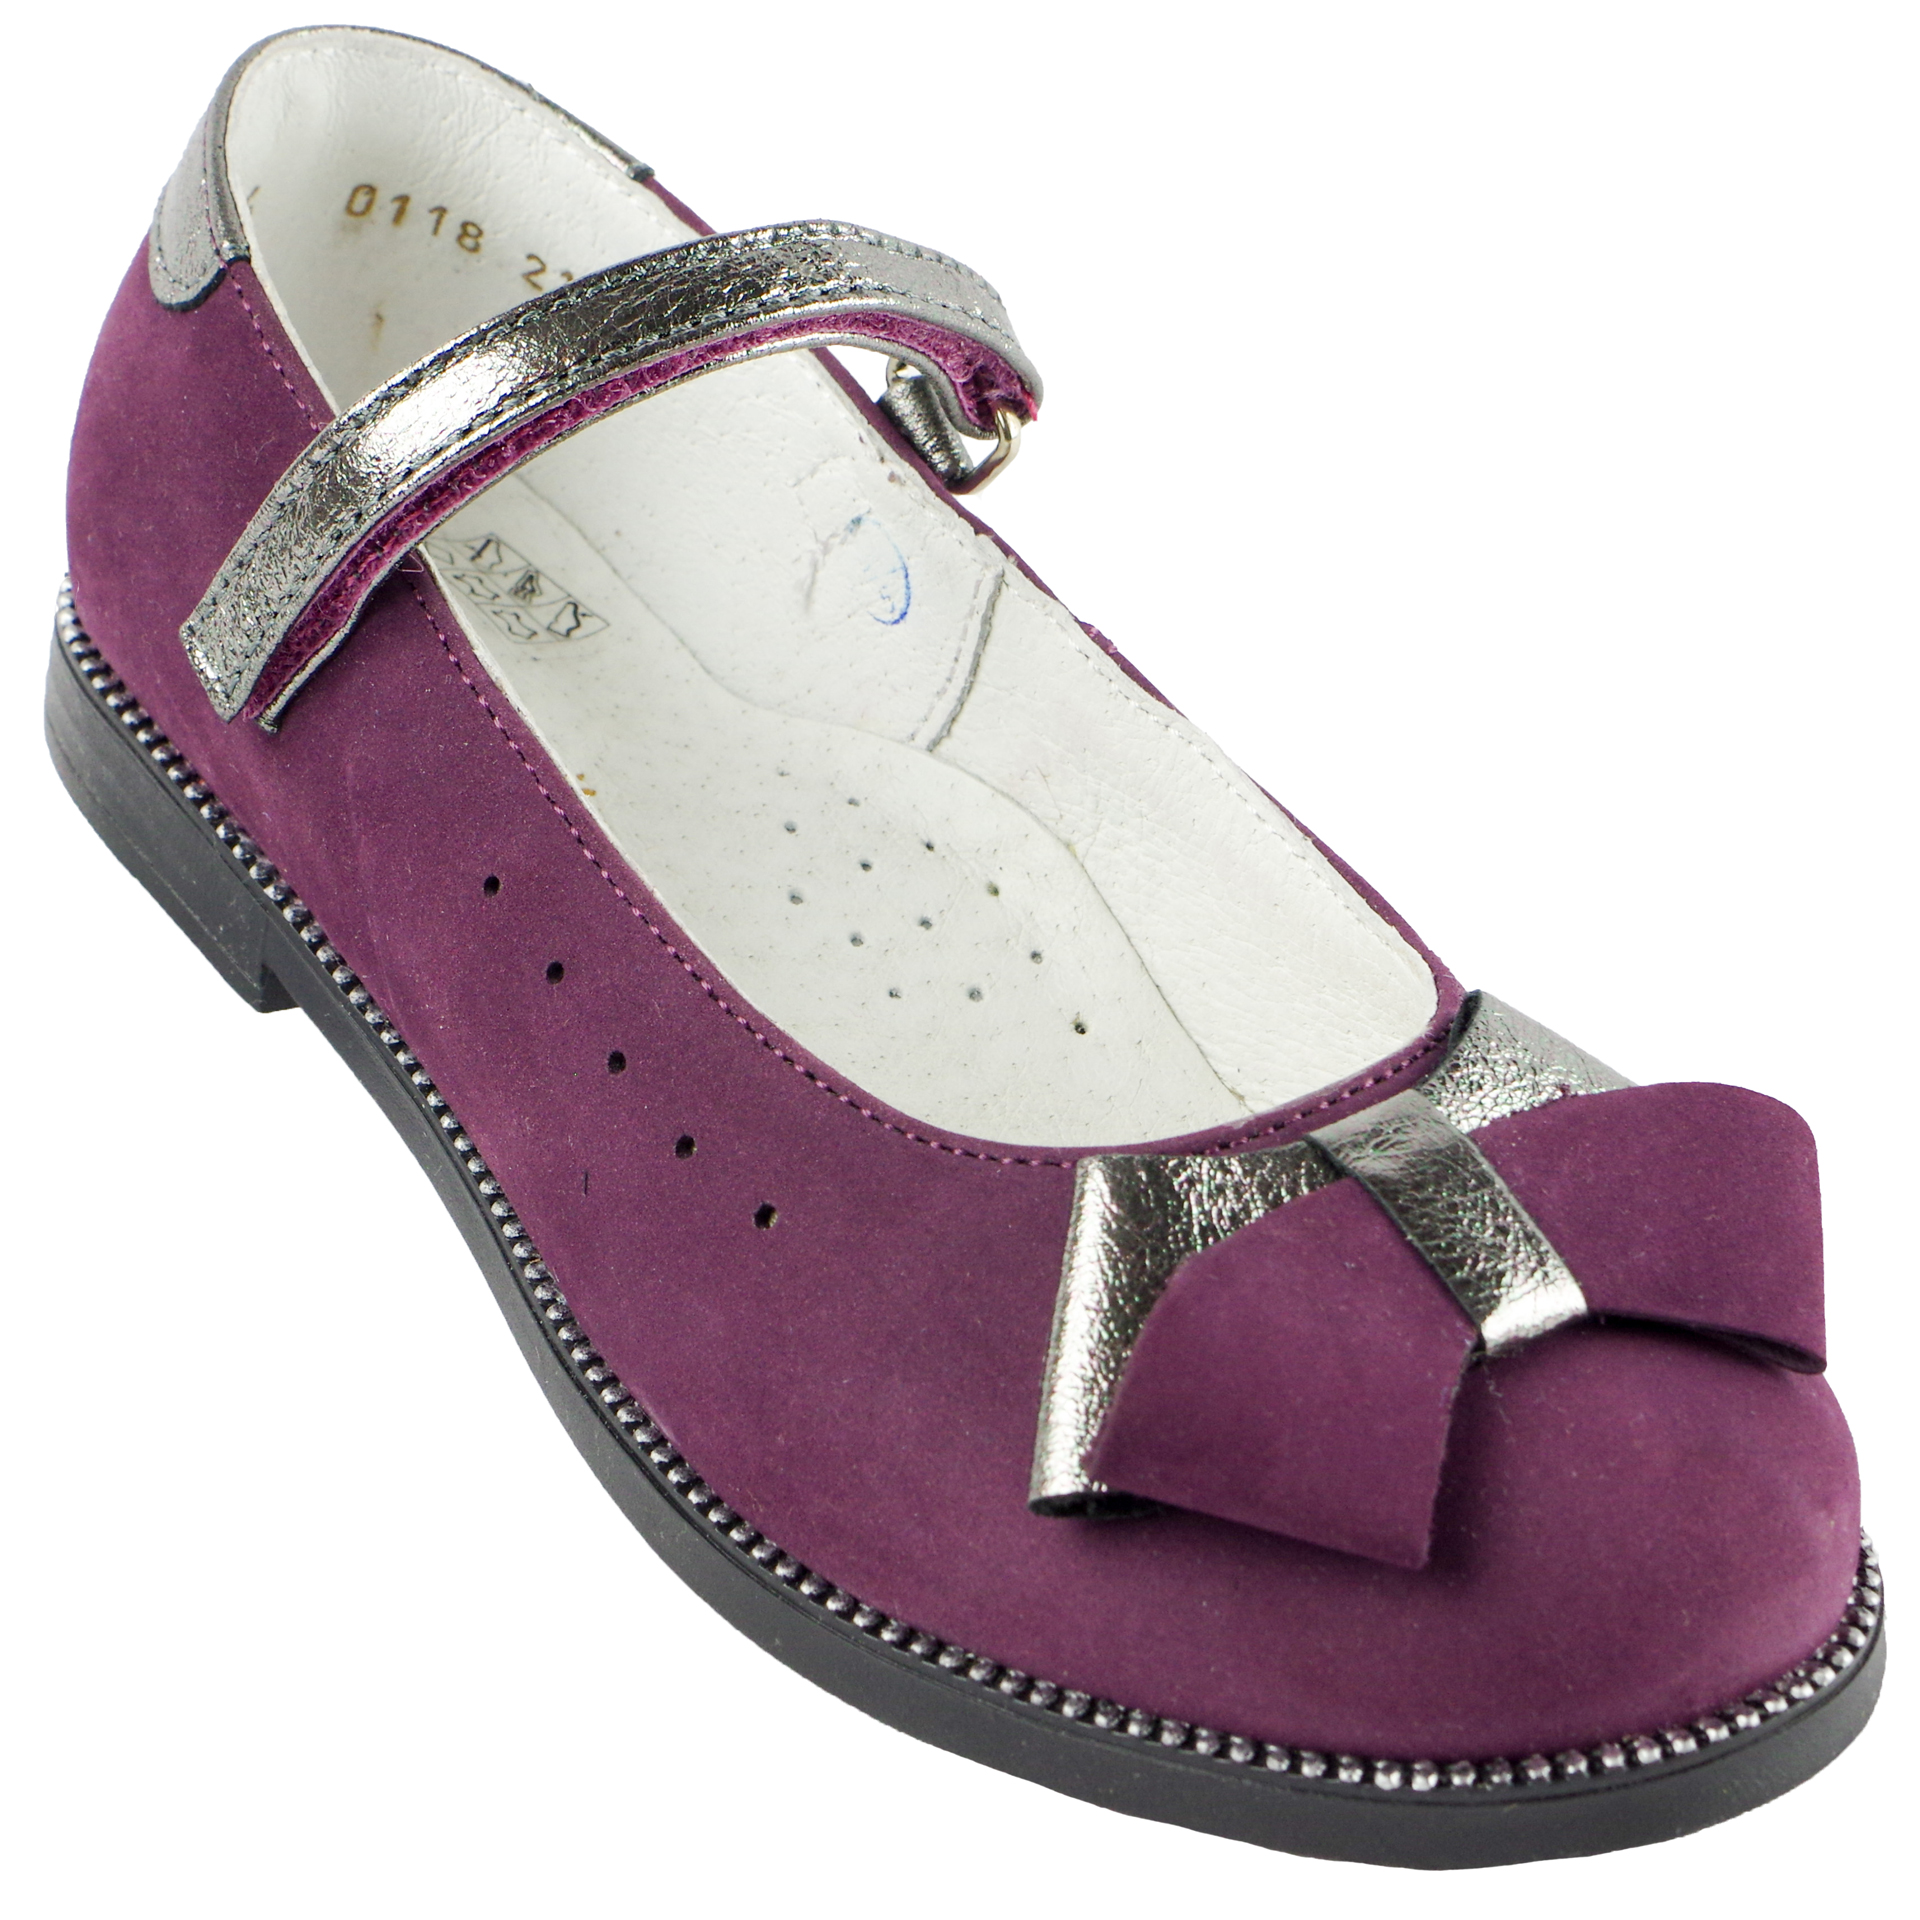 Туфлі дитячі (1384) для дівчинки, матеріал Нубук, Фіолетовий колір, 27-31 розміри – Sole Kids